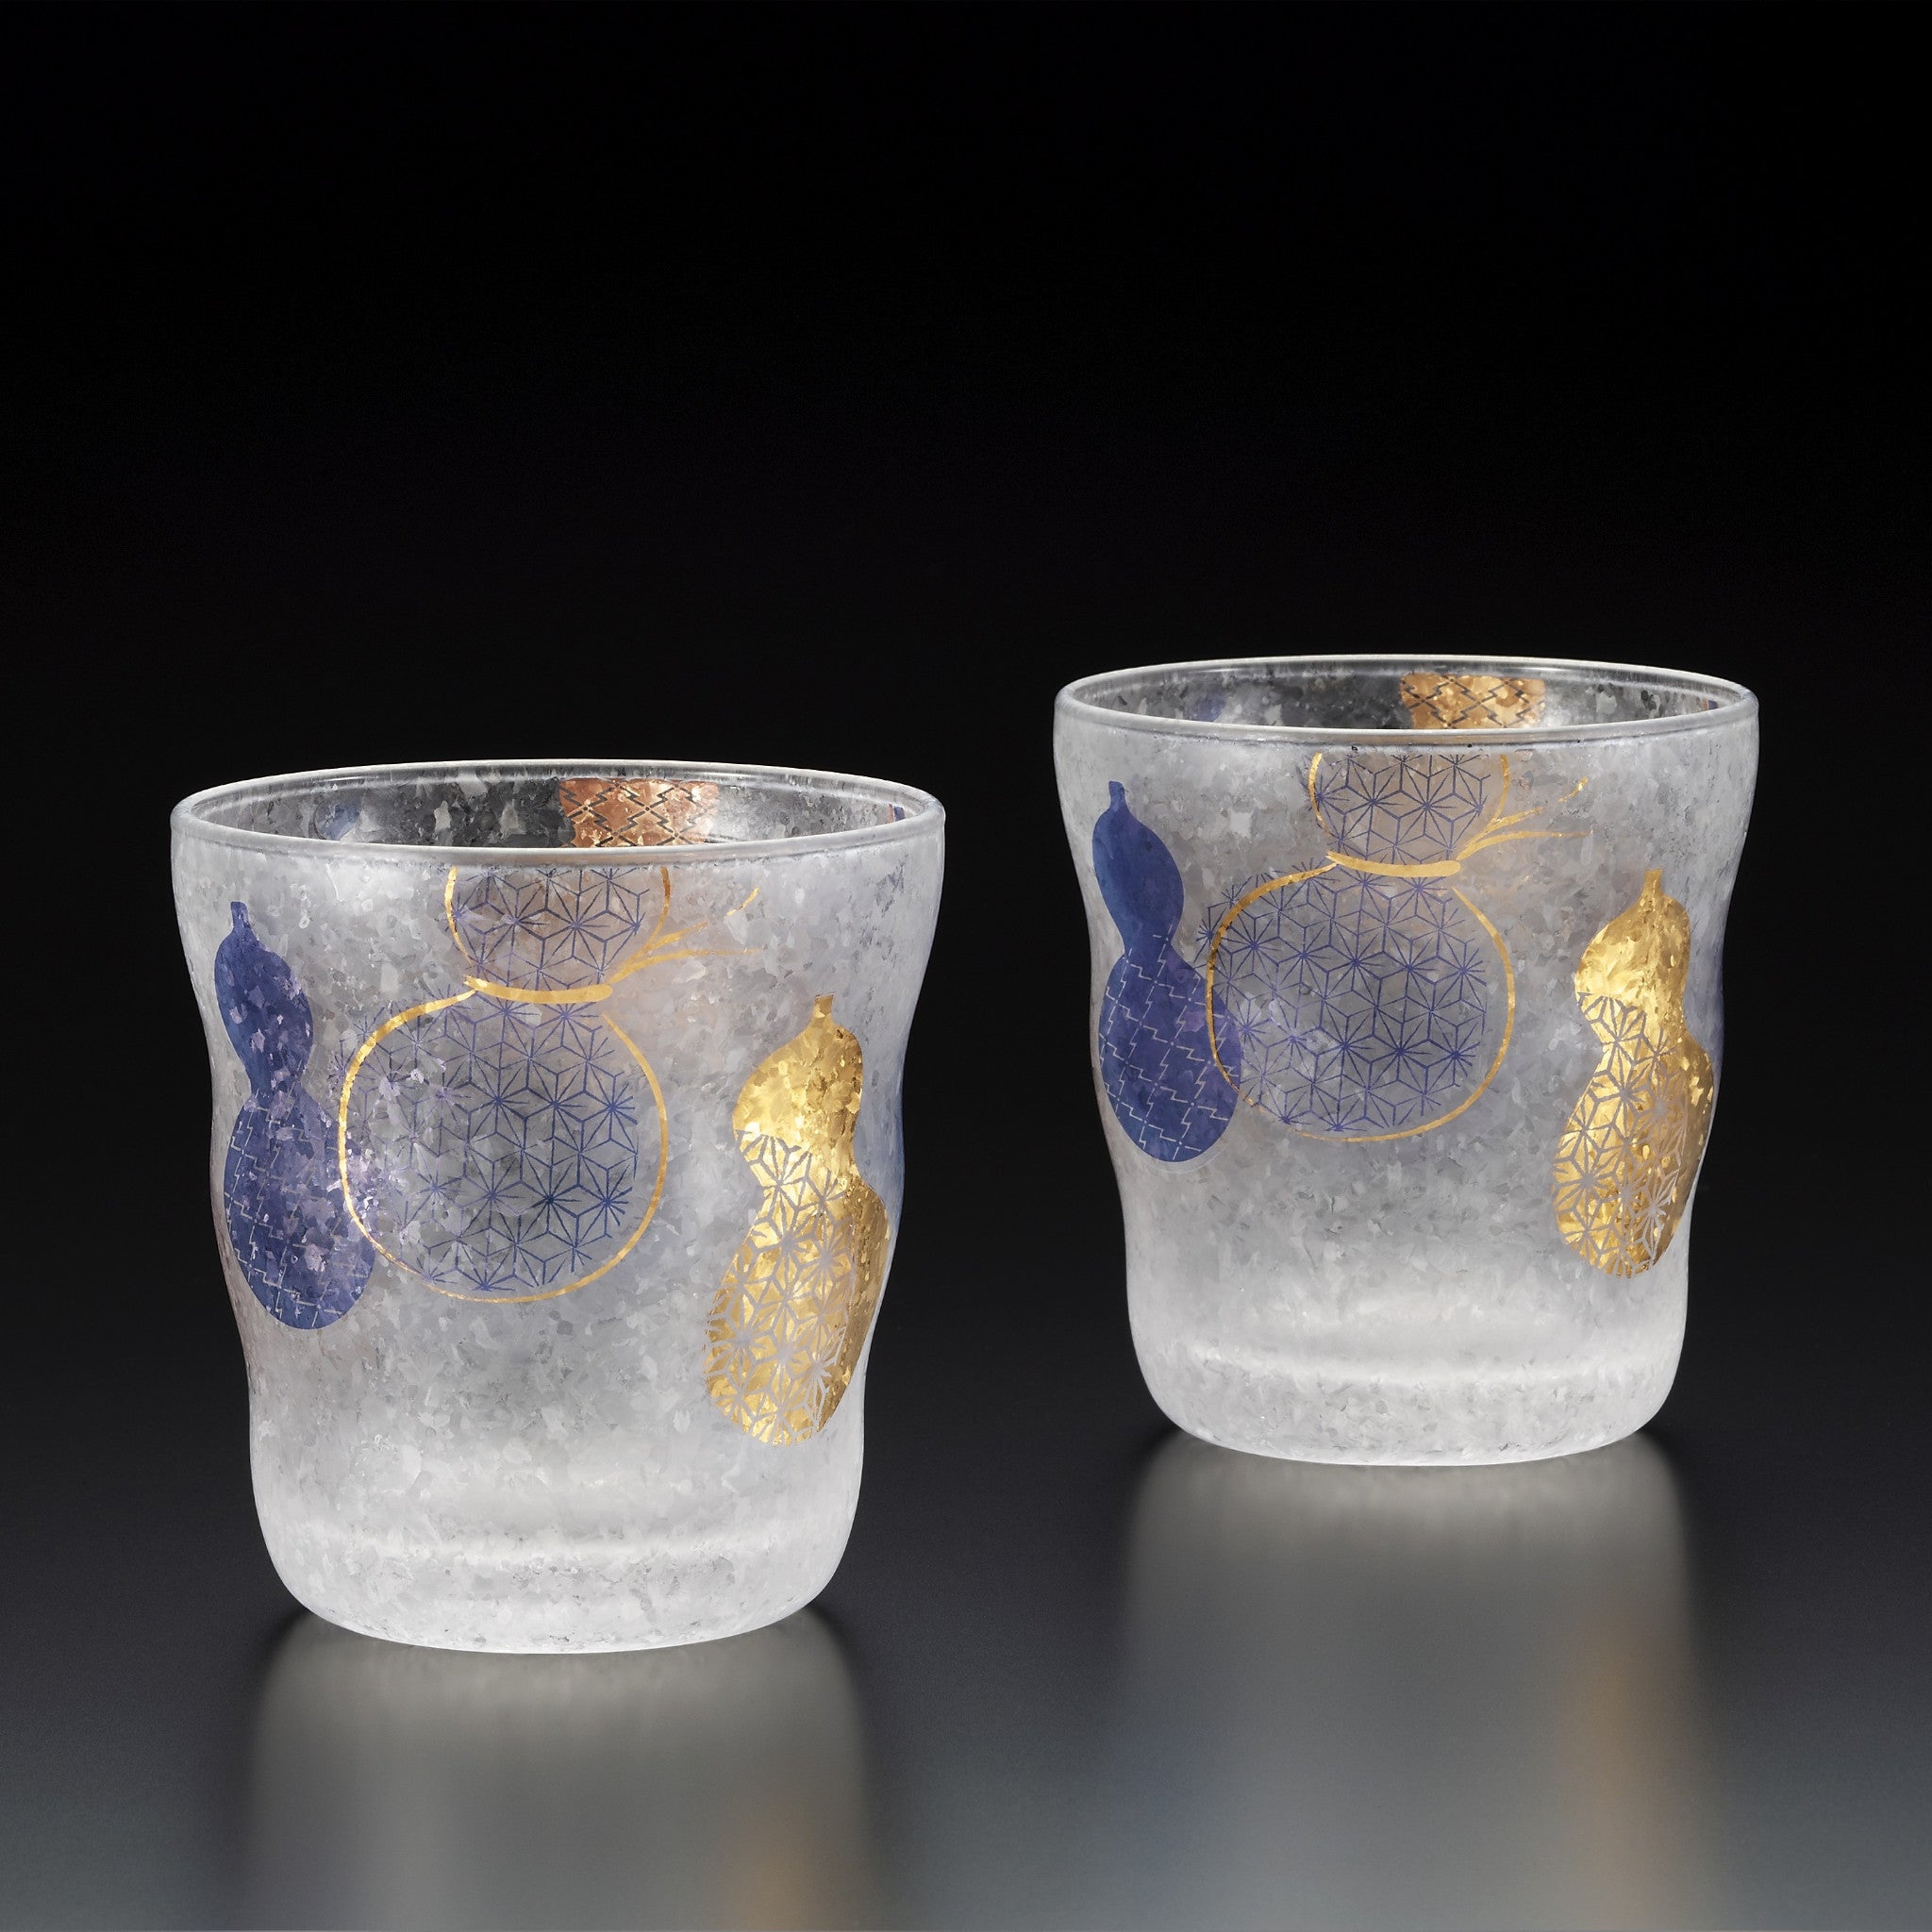 HYOTAN Pair Water Glass - Set of 2 -瓢箪グラス ペア-